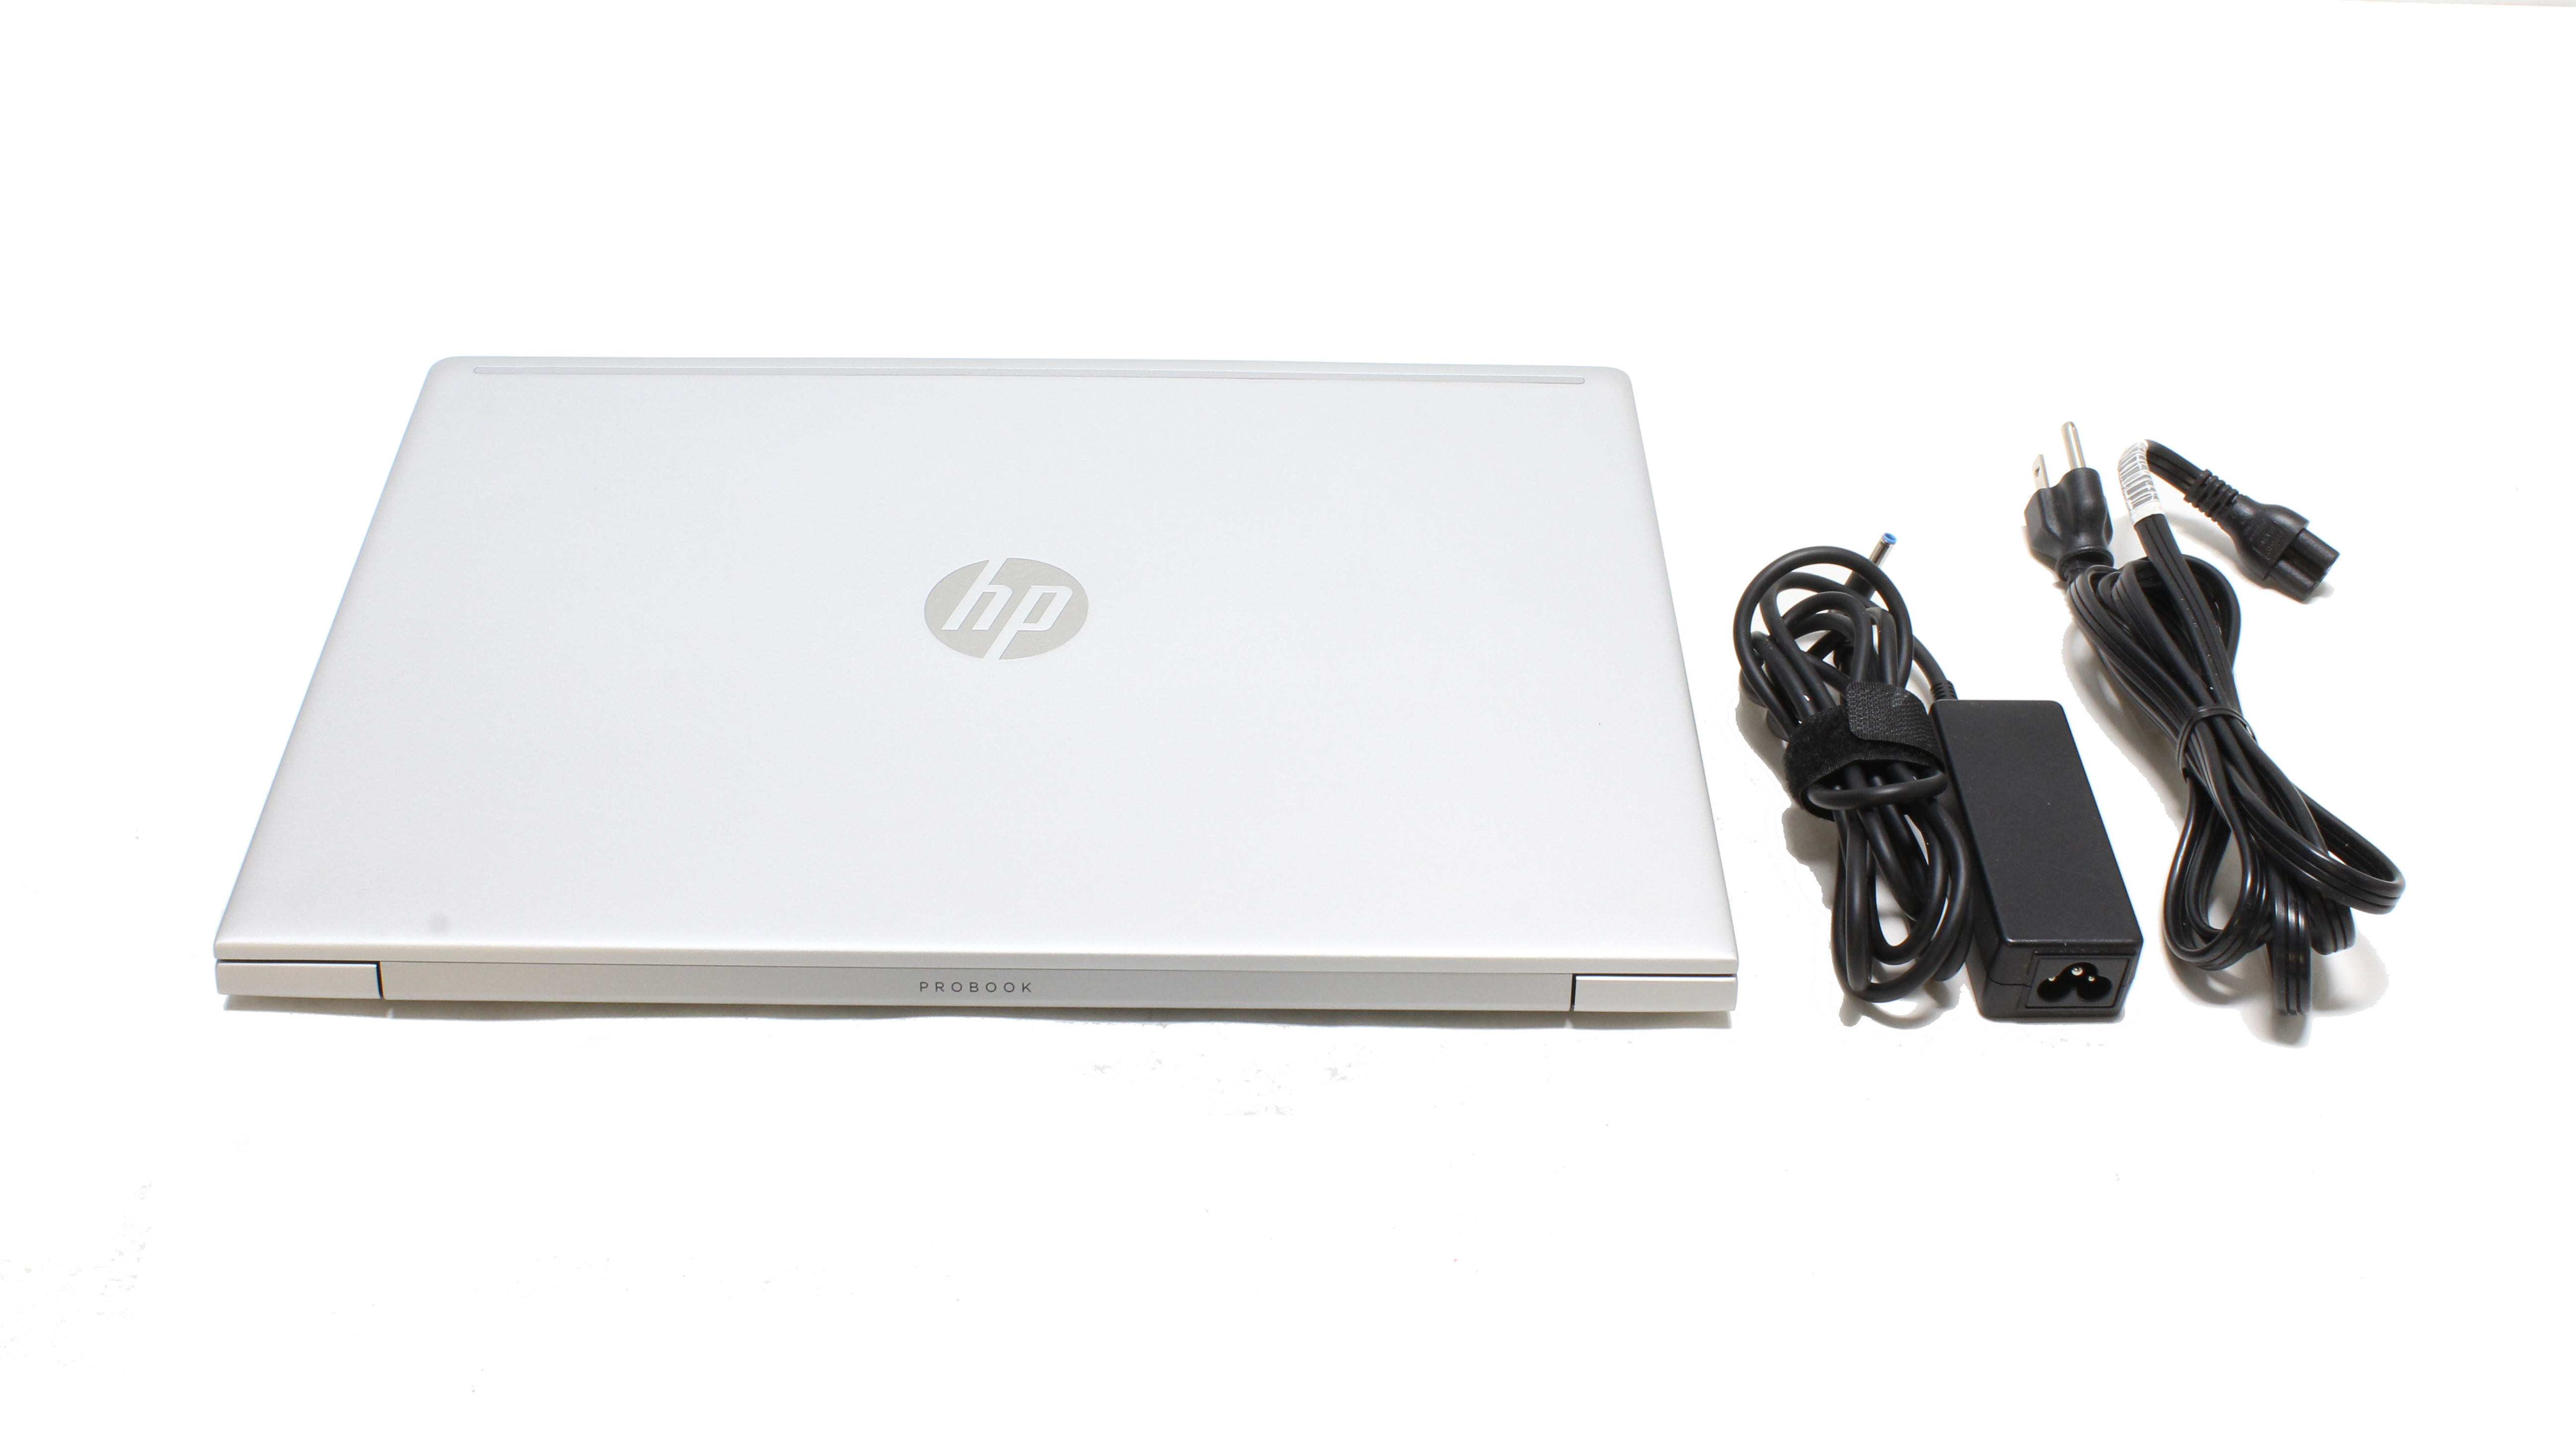 HP ProBook 455R G6 15.6" Full HD AMD Ryzen 3 3200U 2.6GHz SSD 128GB RAM 4GB Win10 7MS82UT#ABA